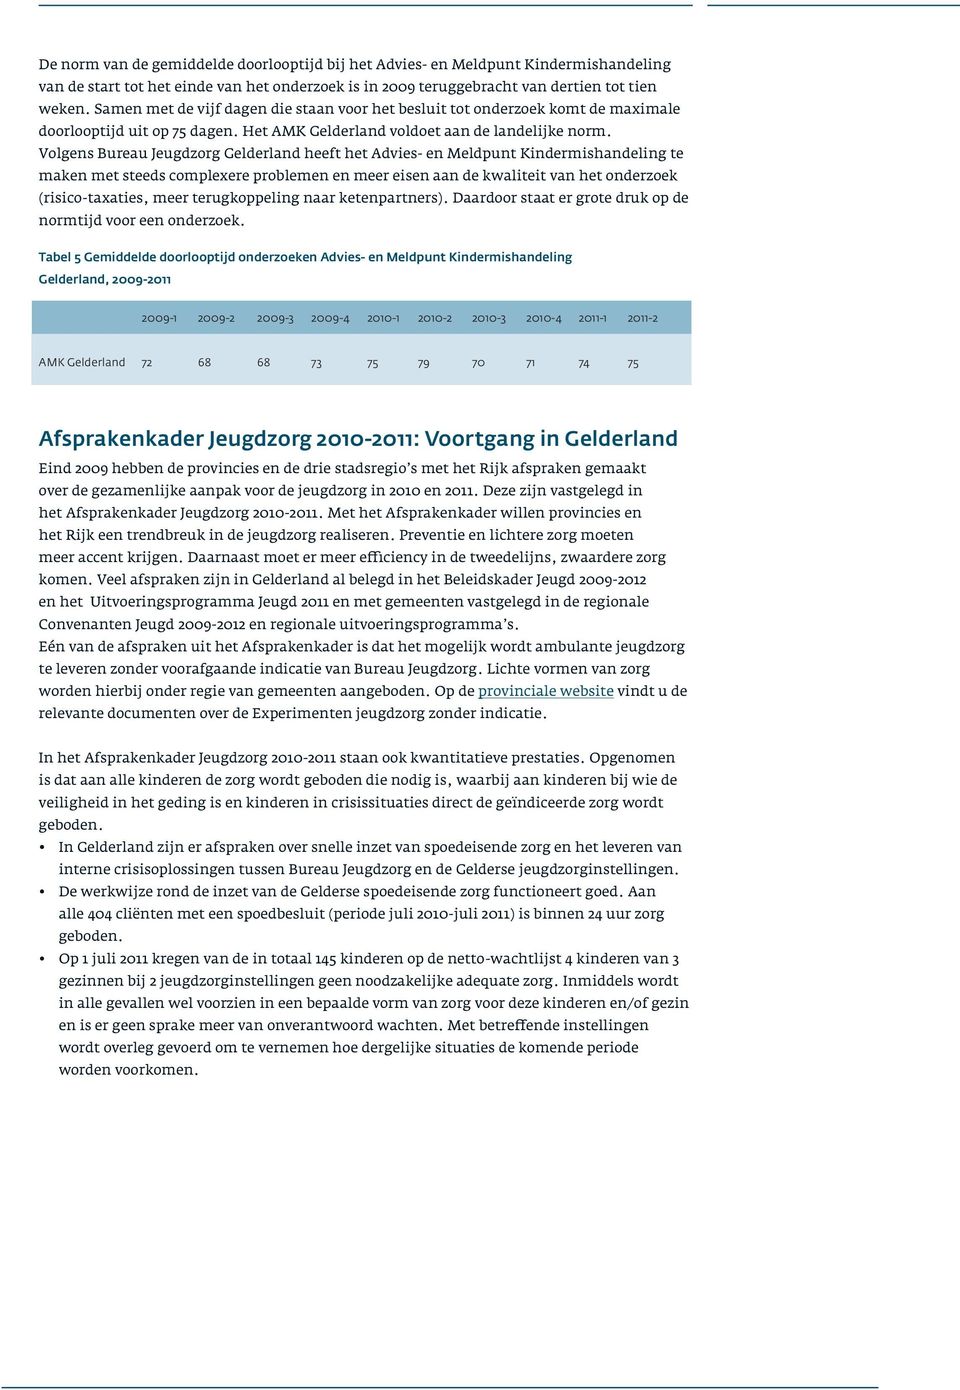 Volgens Bureau Jeugdzorg Gelderland heeft het Advies- en Meldpunt Kindermishandeling te maken met steeds complexere problemen en meer eisen aan de kwaliteit van het onderzoek (risico-taxaties, meer